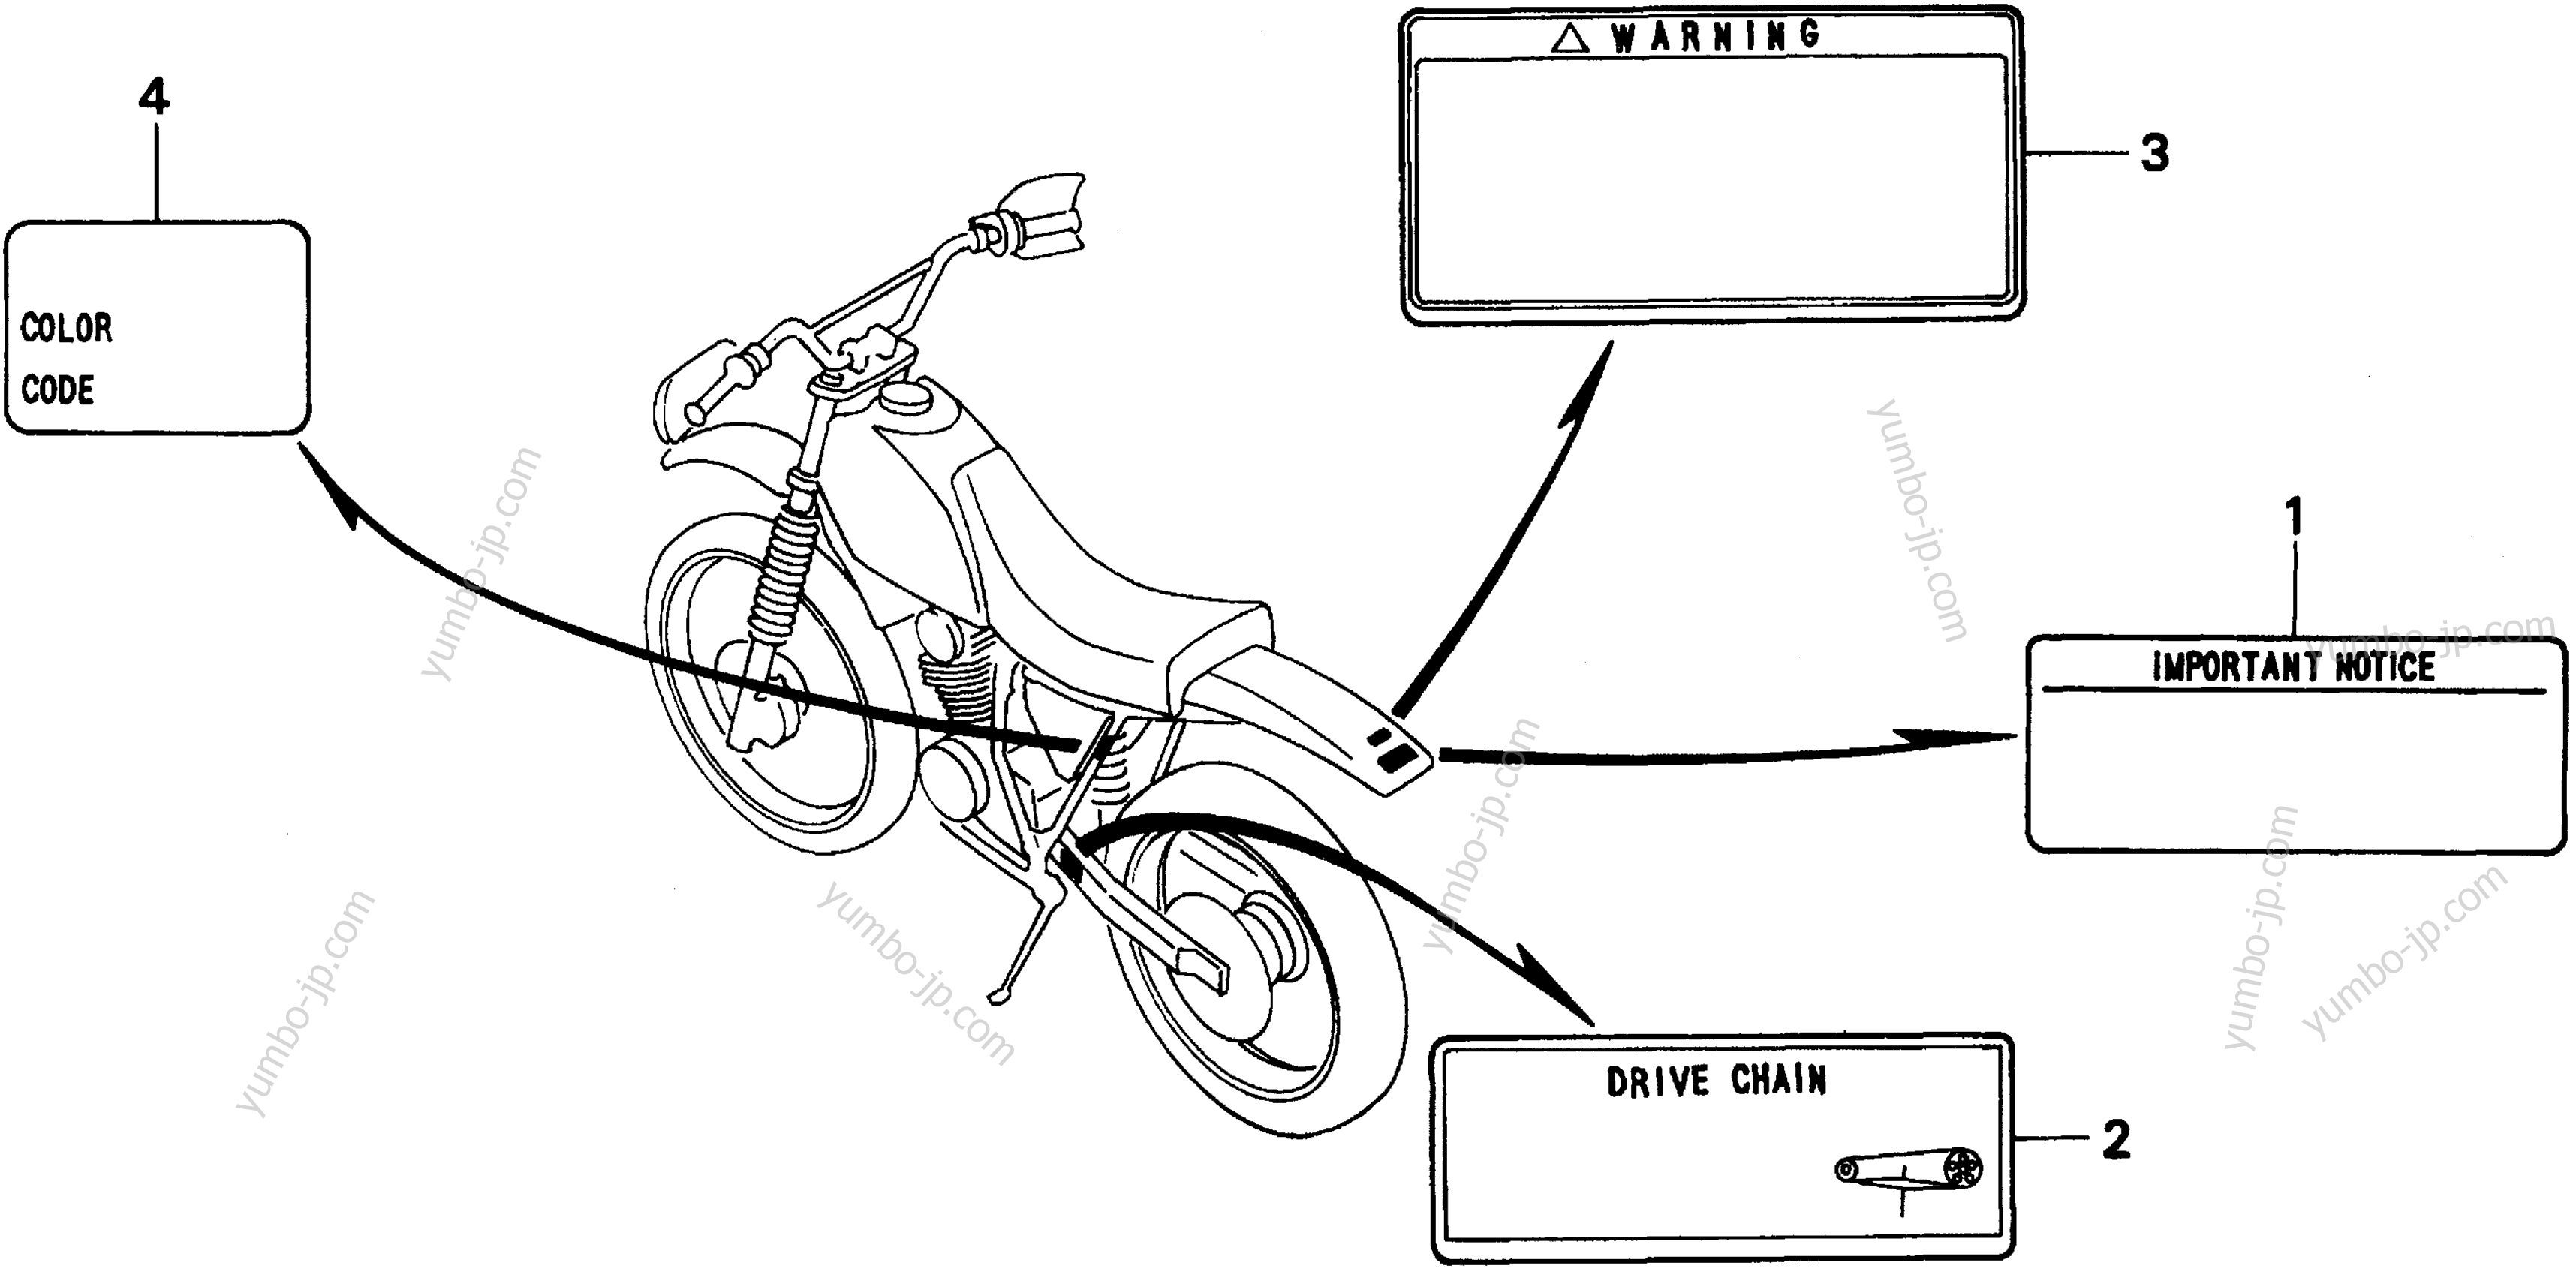 CAUTION LABELS для мотоциклов HONDA XR200R A 1997 г.